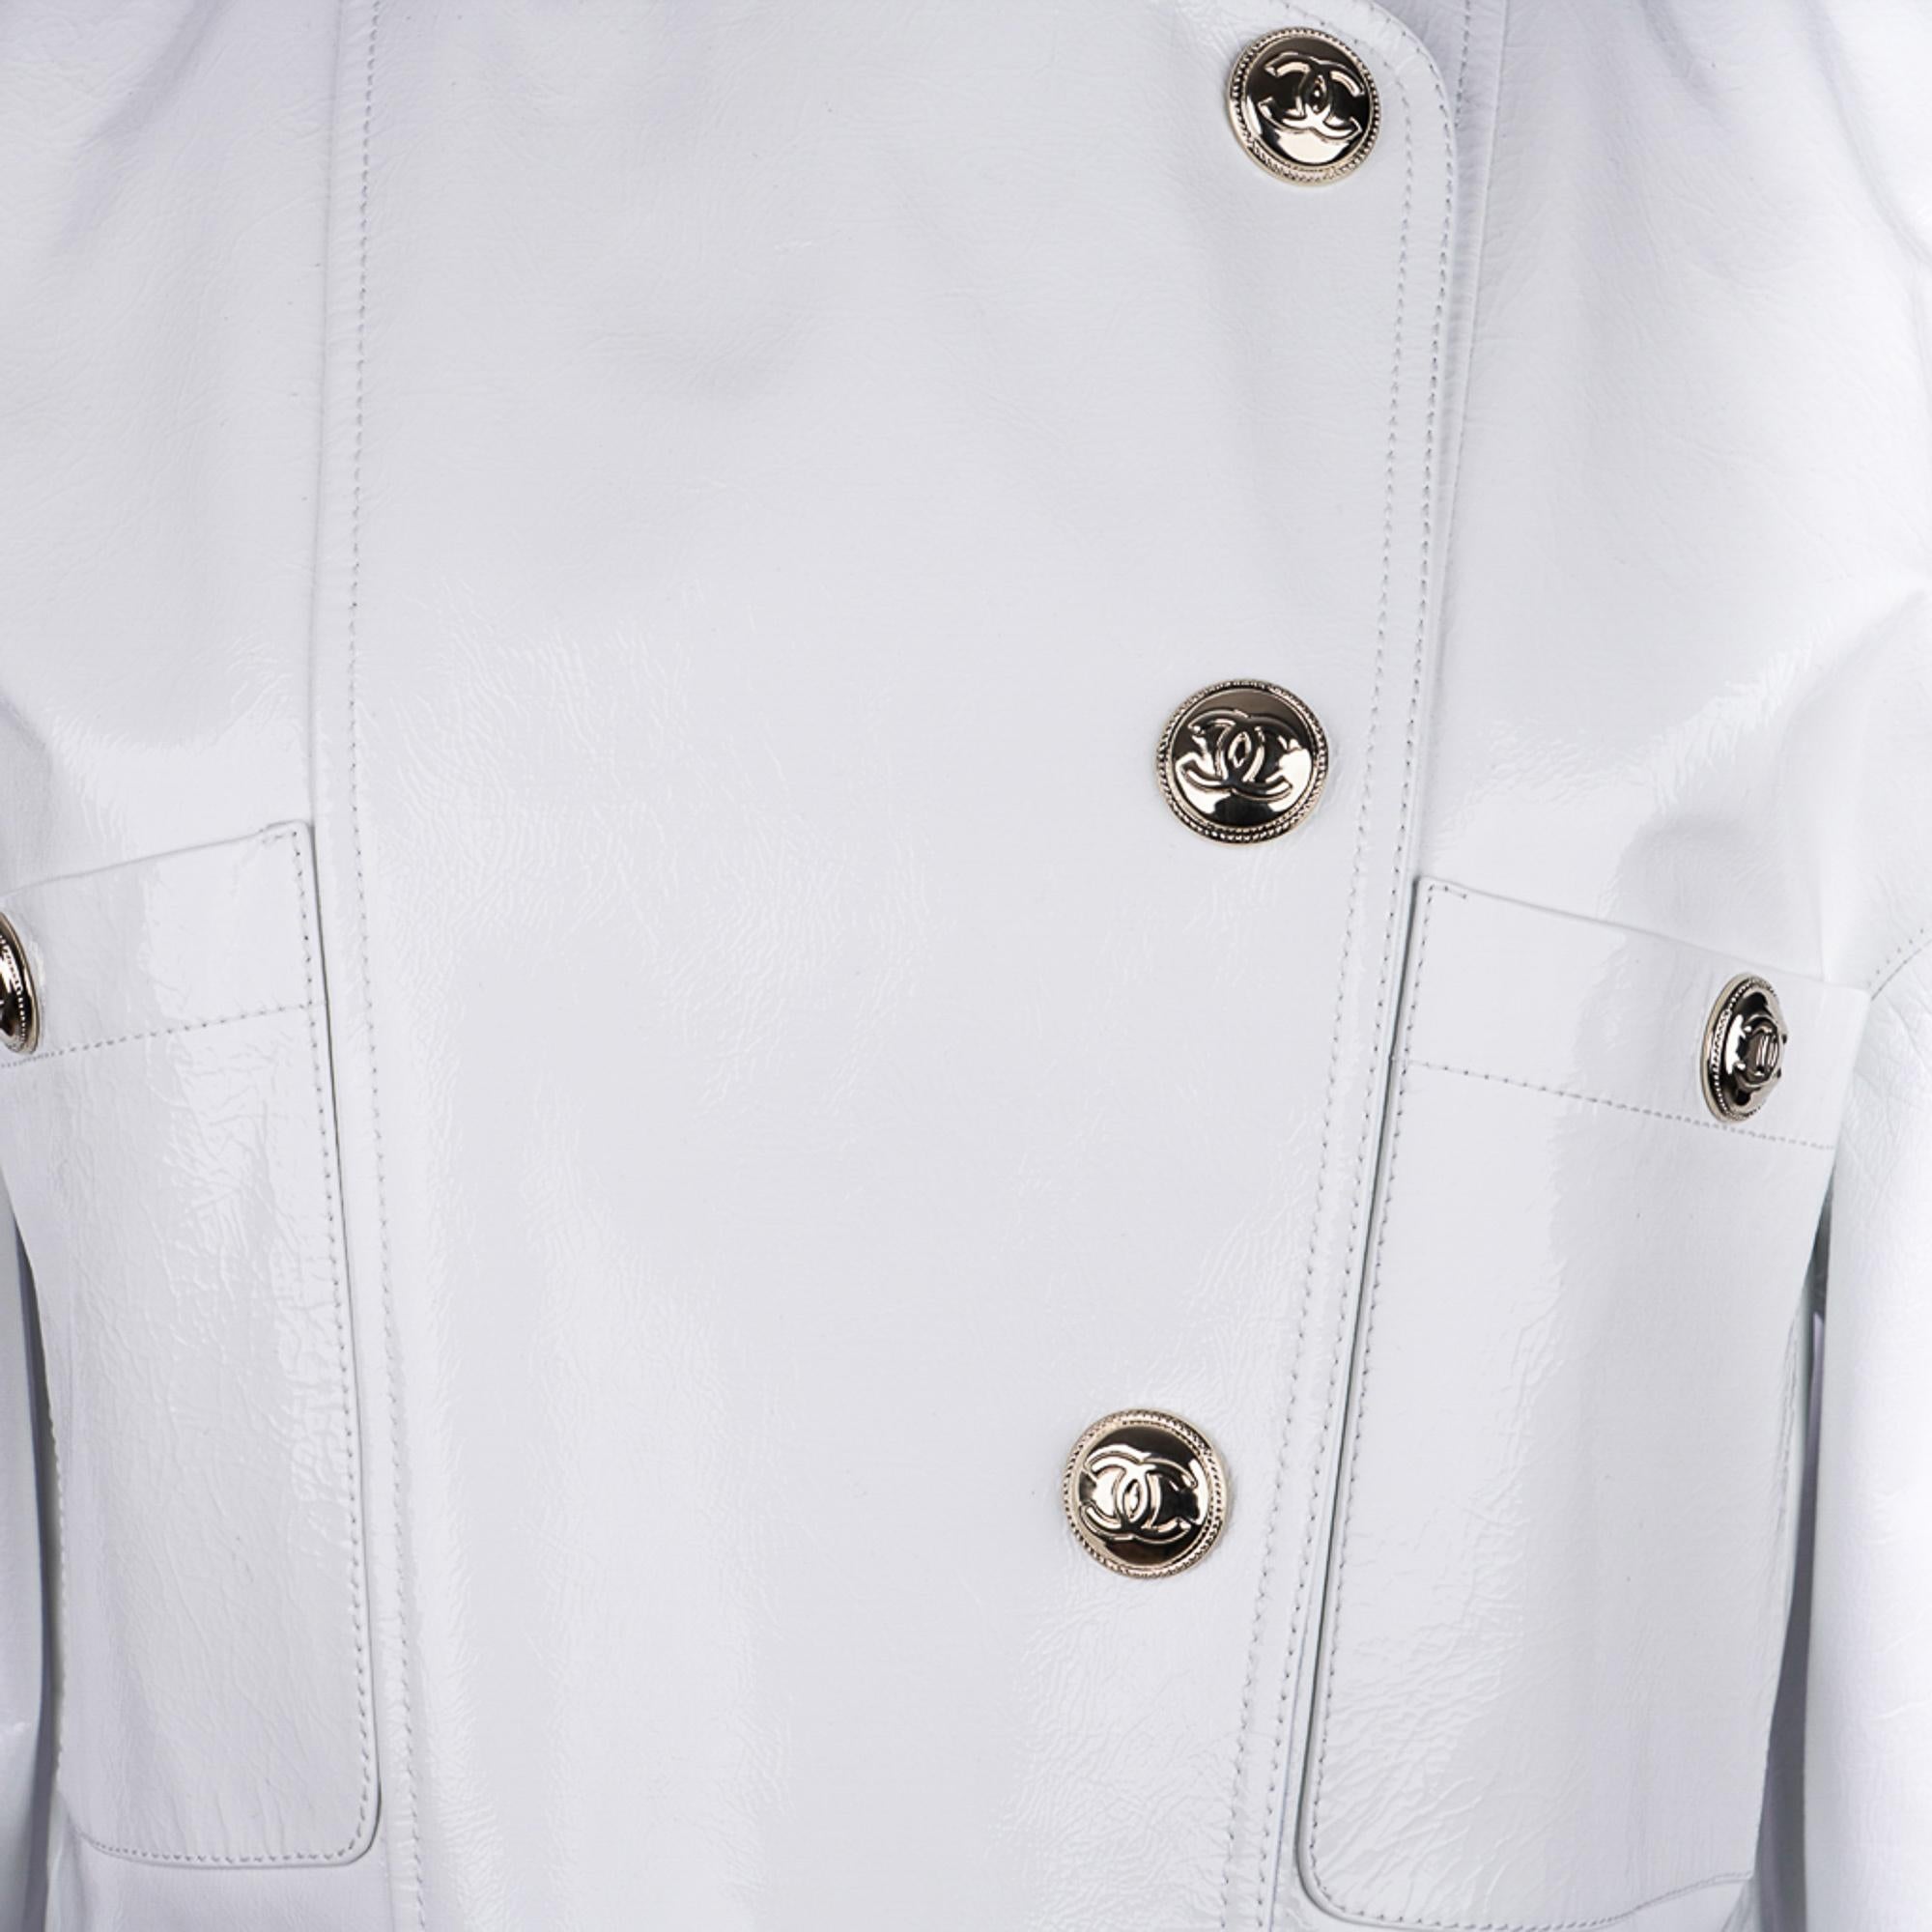 Veste courte Chanel 2020-21FW en cuir verni blanc style motard, taille 36/4, neuve avec étiquettes 2